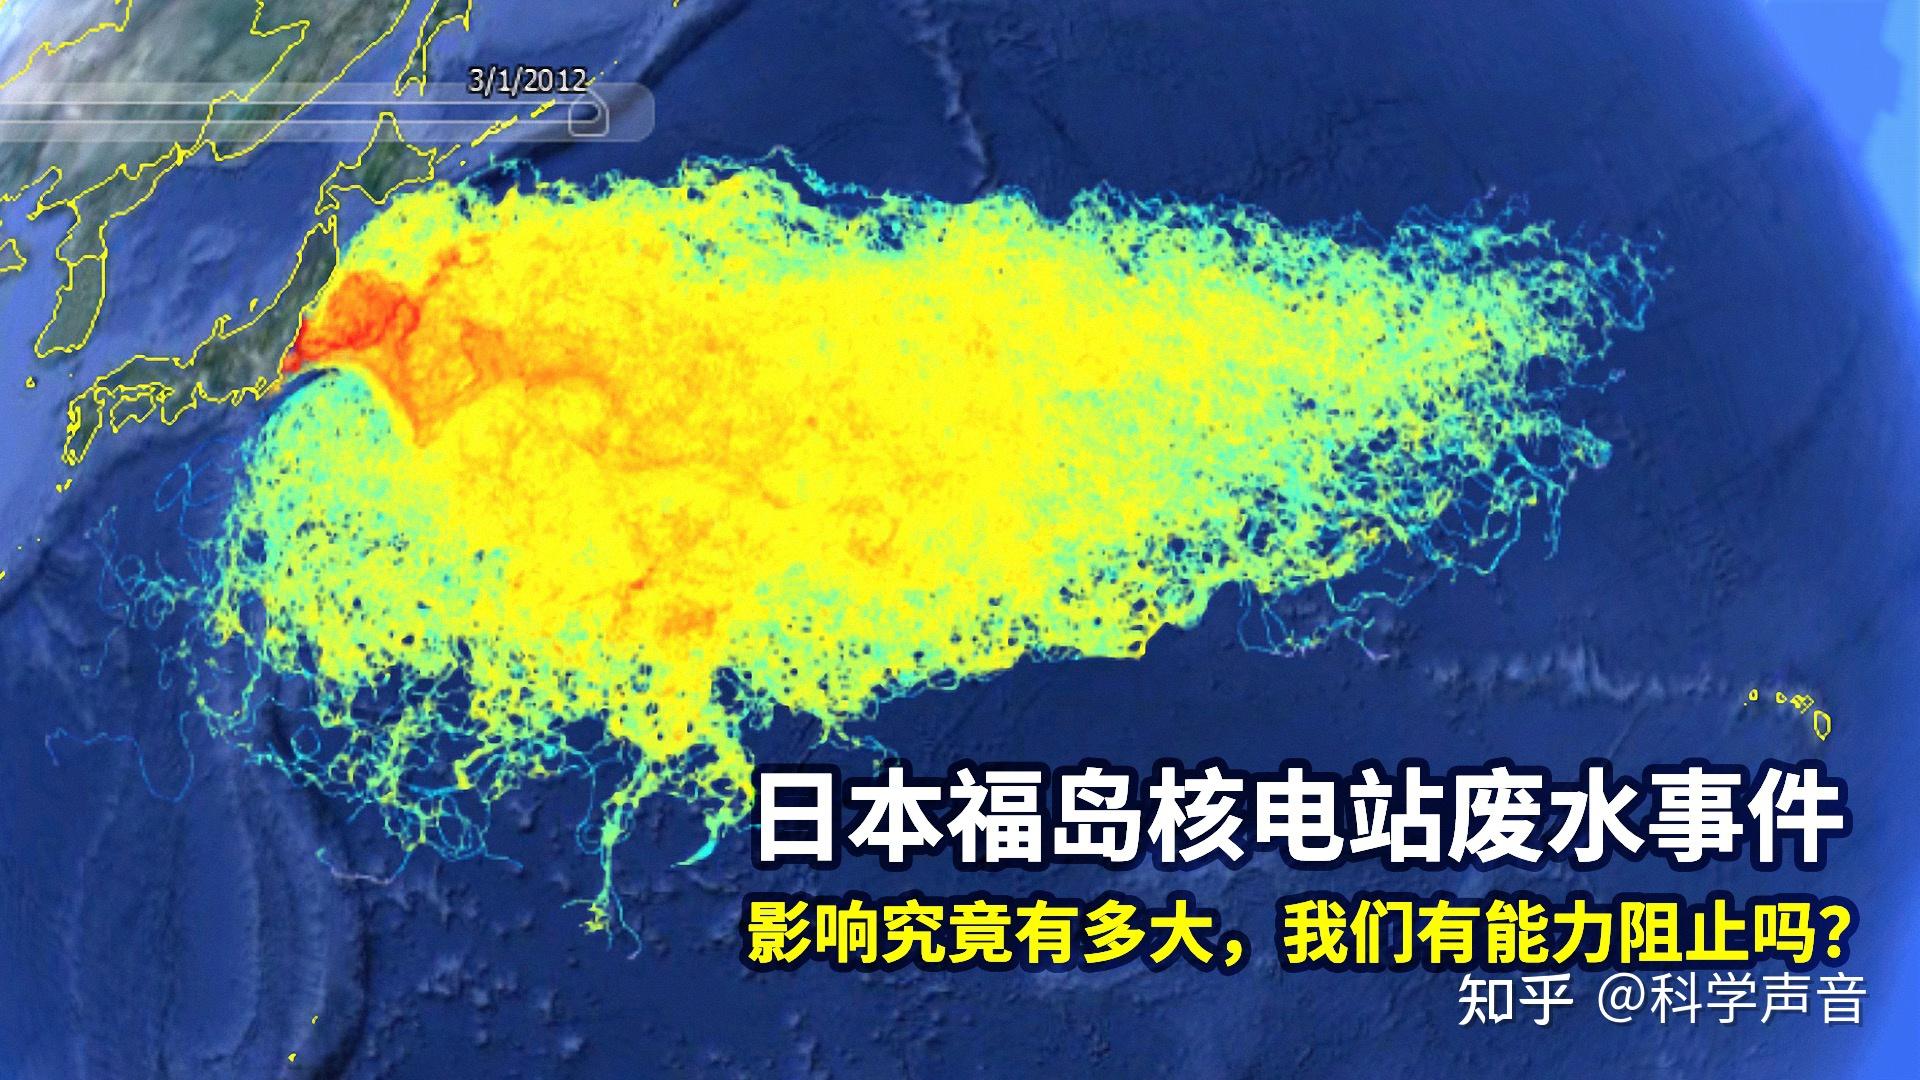 日本福岛核辐射后 胆小者跳过第九张图片-第9页-原油图片新闻-金投原油网-金投网